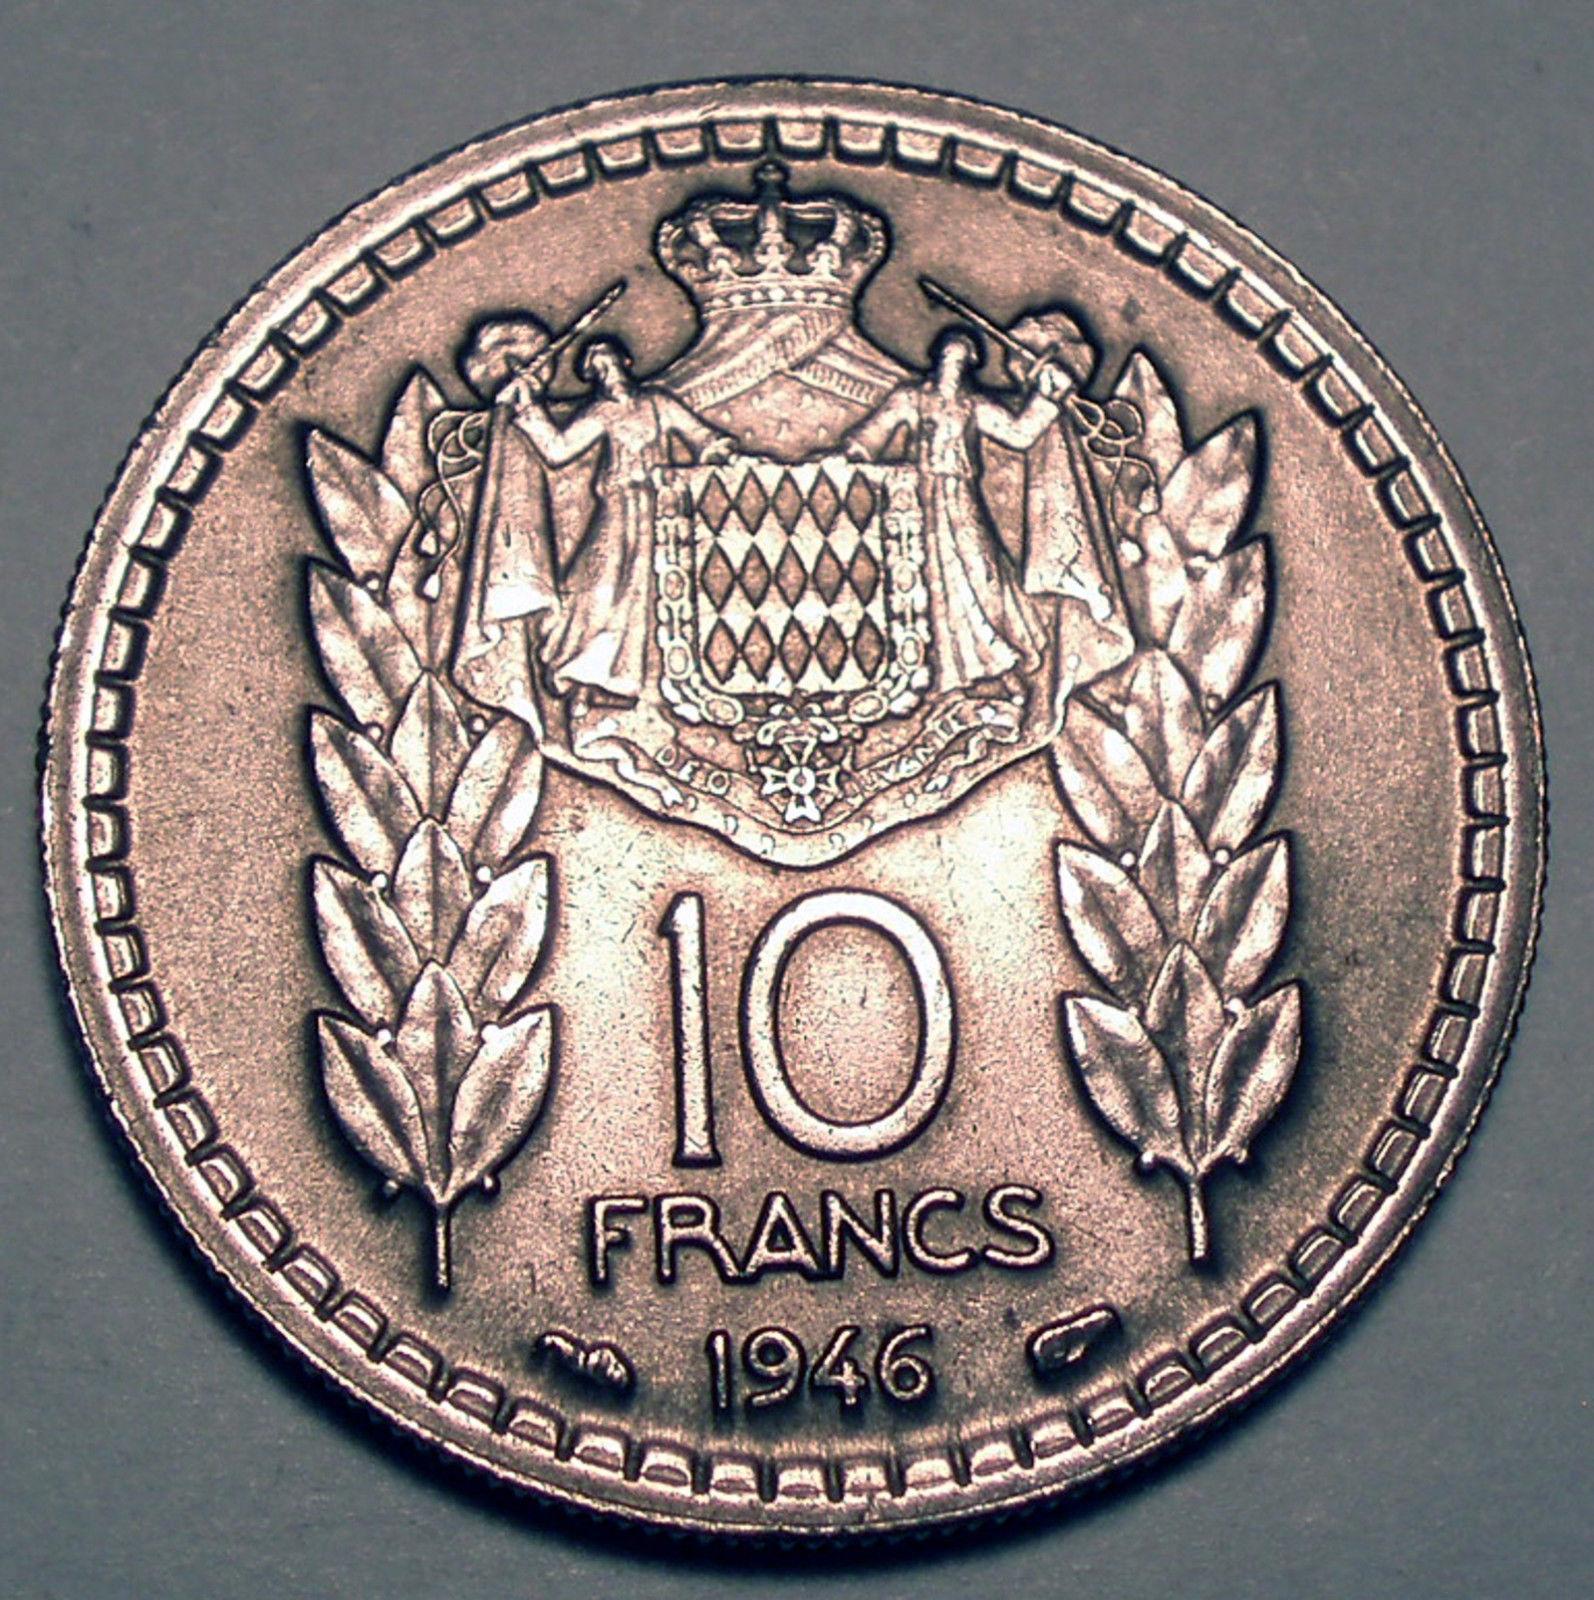 Цена монеты 10 франков (francs) 1946 года Монако: стоимость по аукционам с описанием и фото.